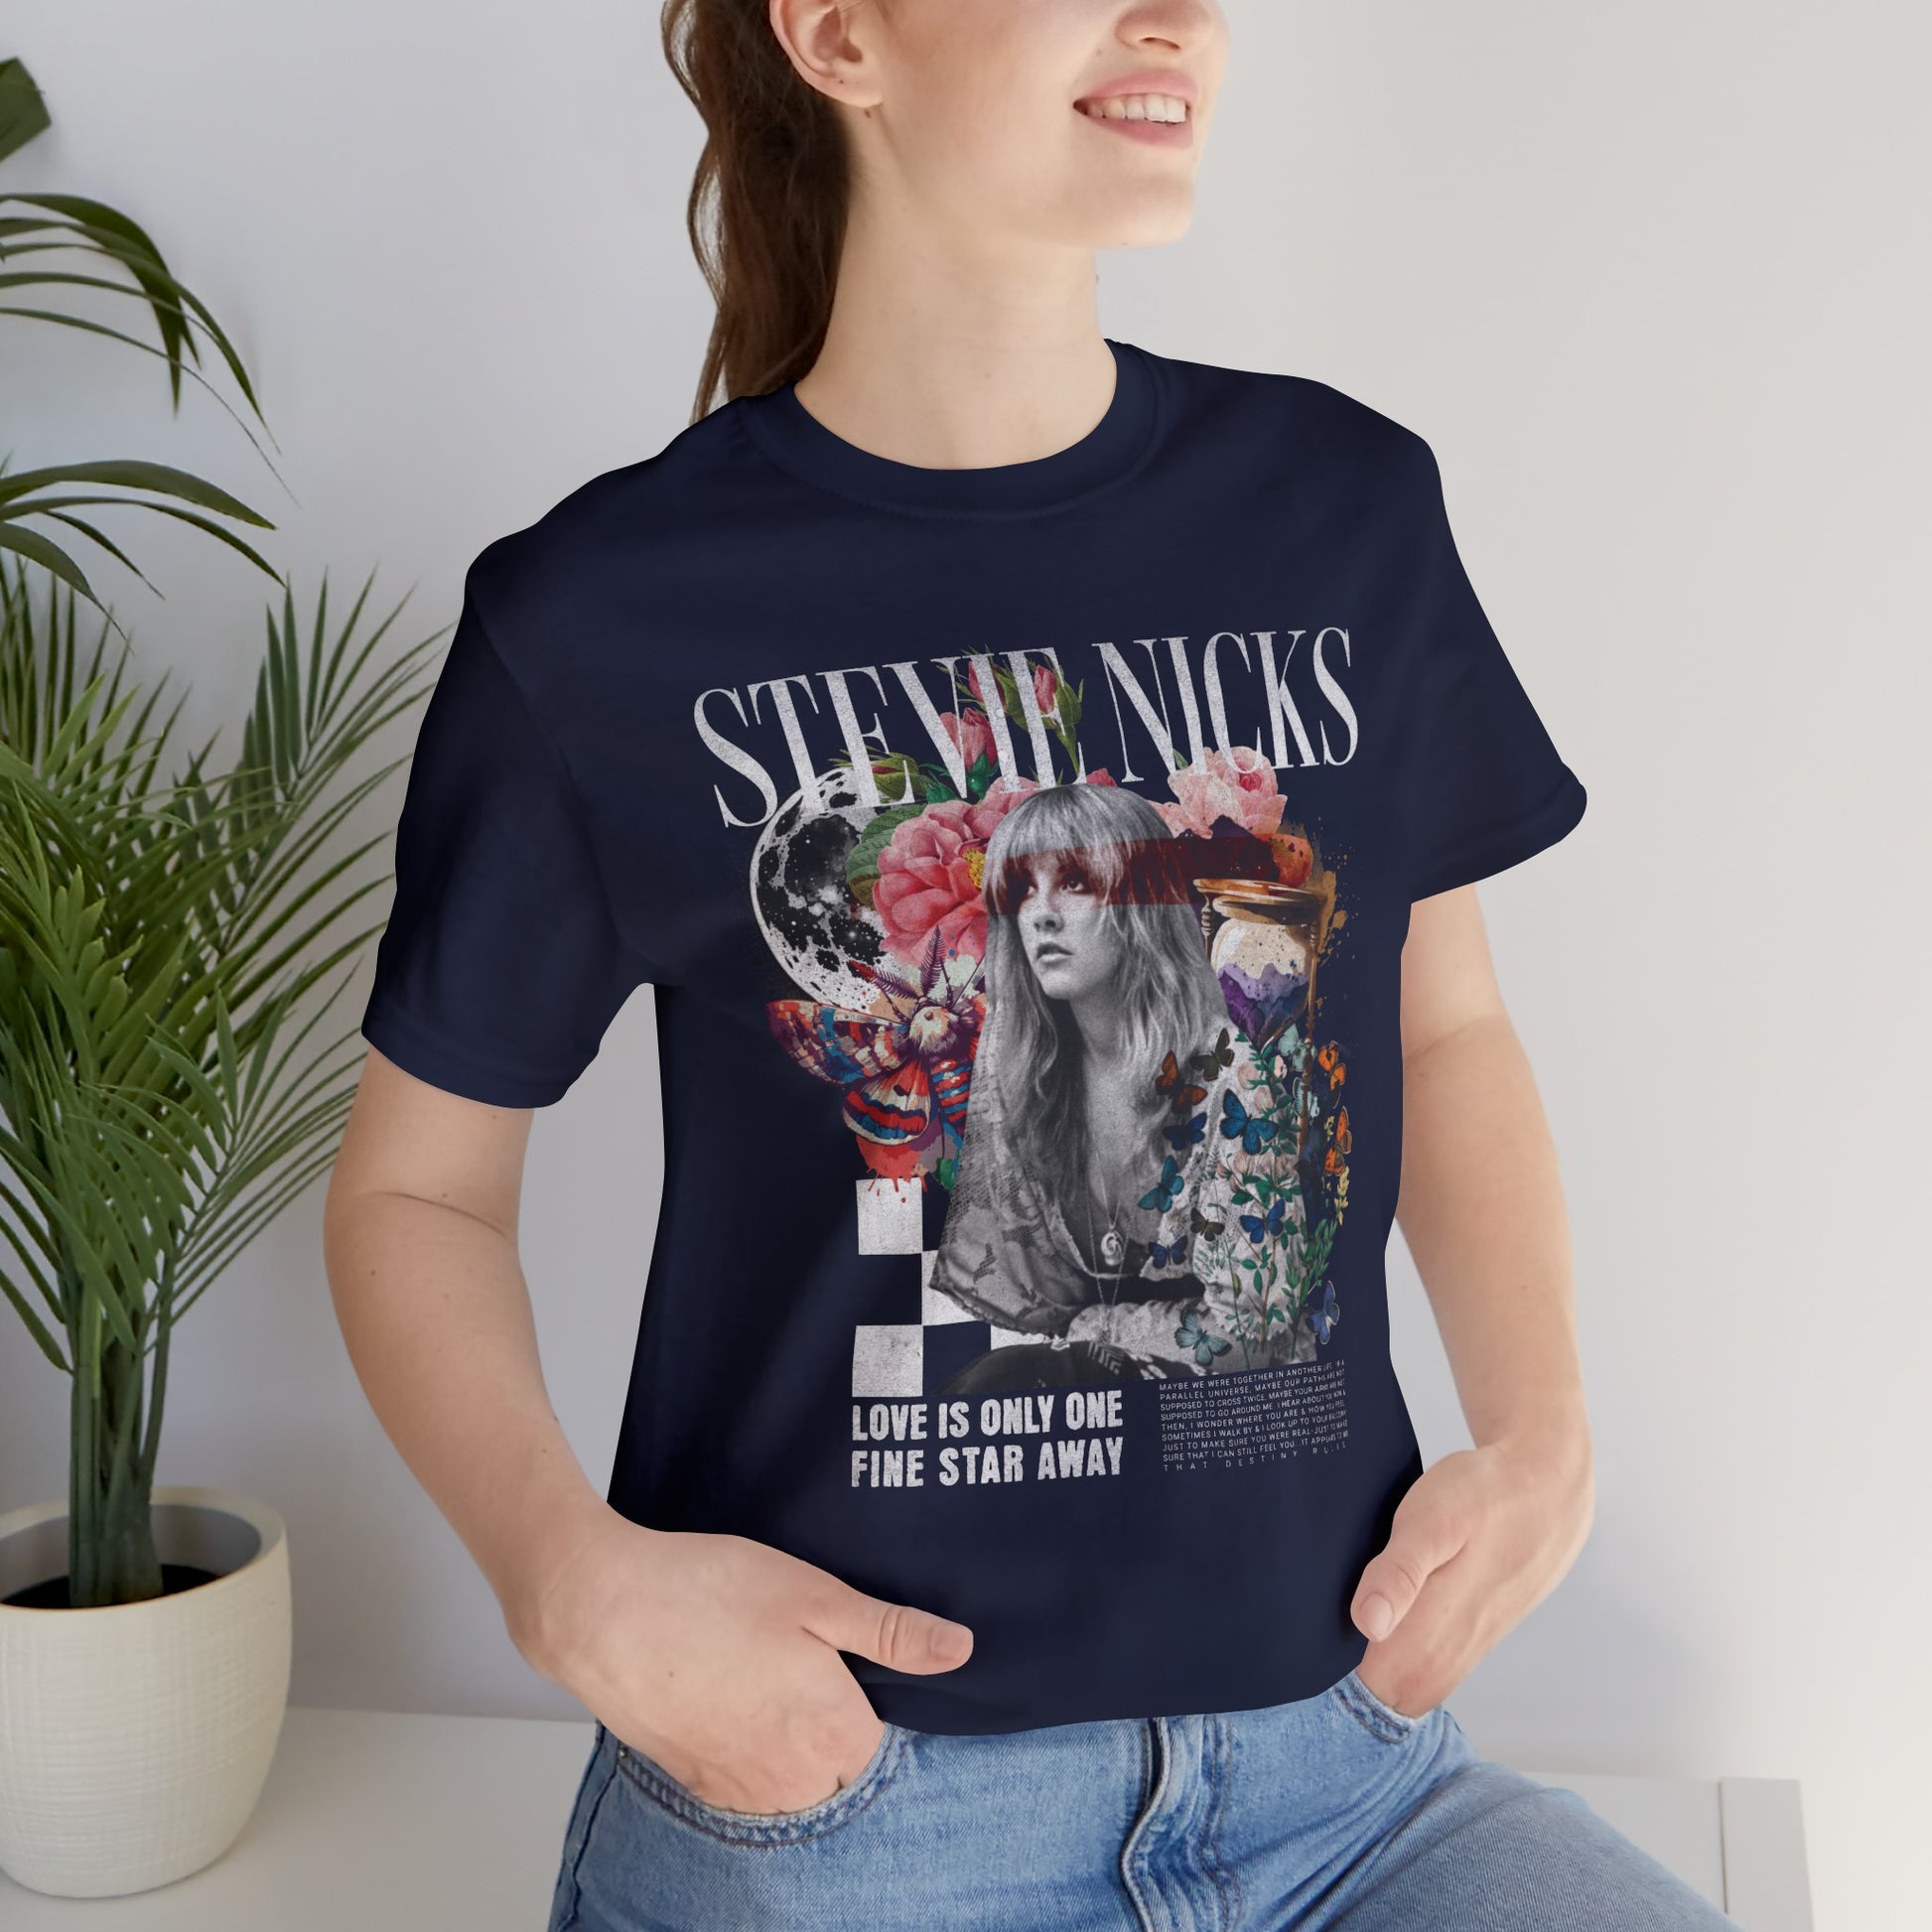 Stevie Nicks Unisex Jersey T-Shirt Navy